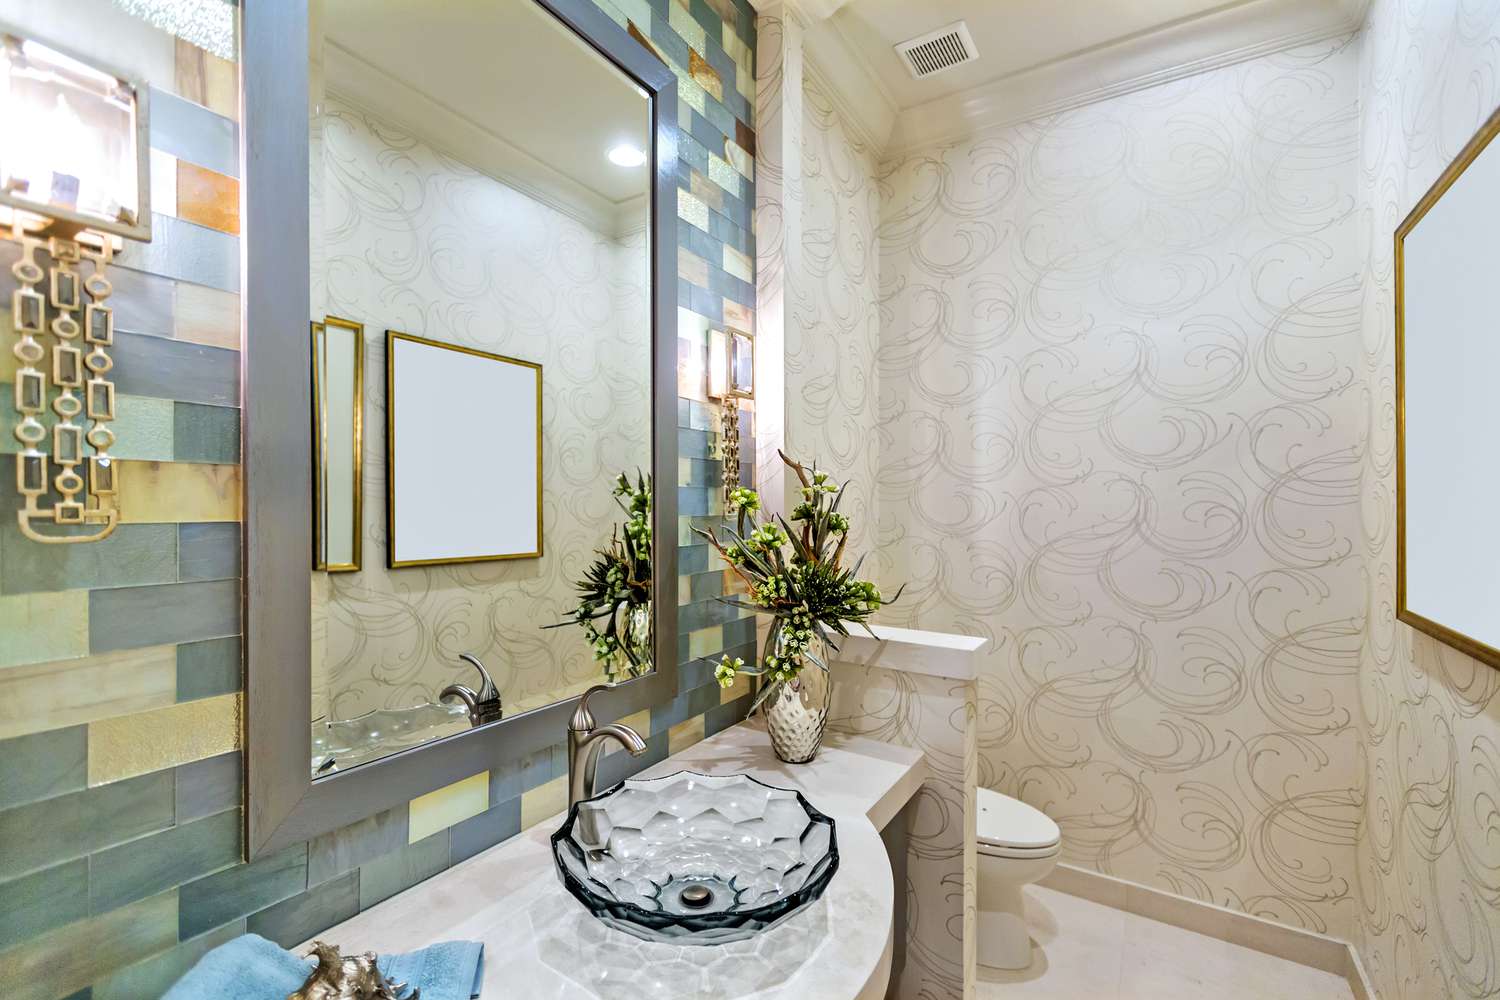 Ein Badezimmer mit bunten Glasfliesen, die das Waschbecken umgeben, und einer durch eine kleine Wand abgetrennten Toilette.